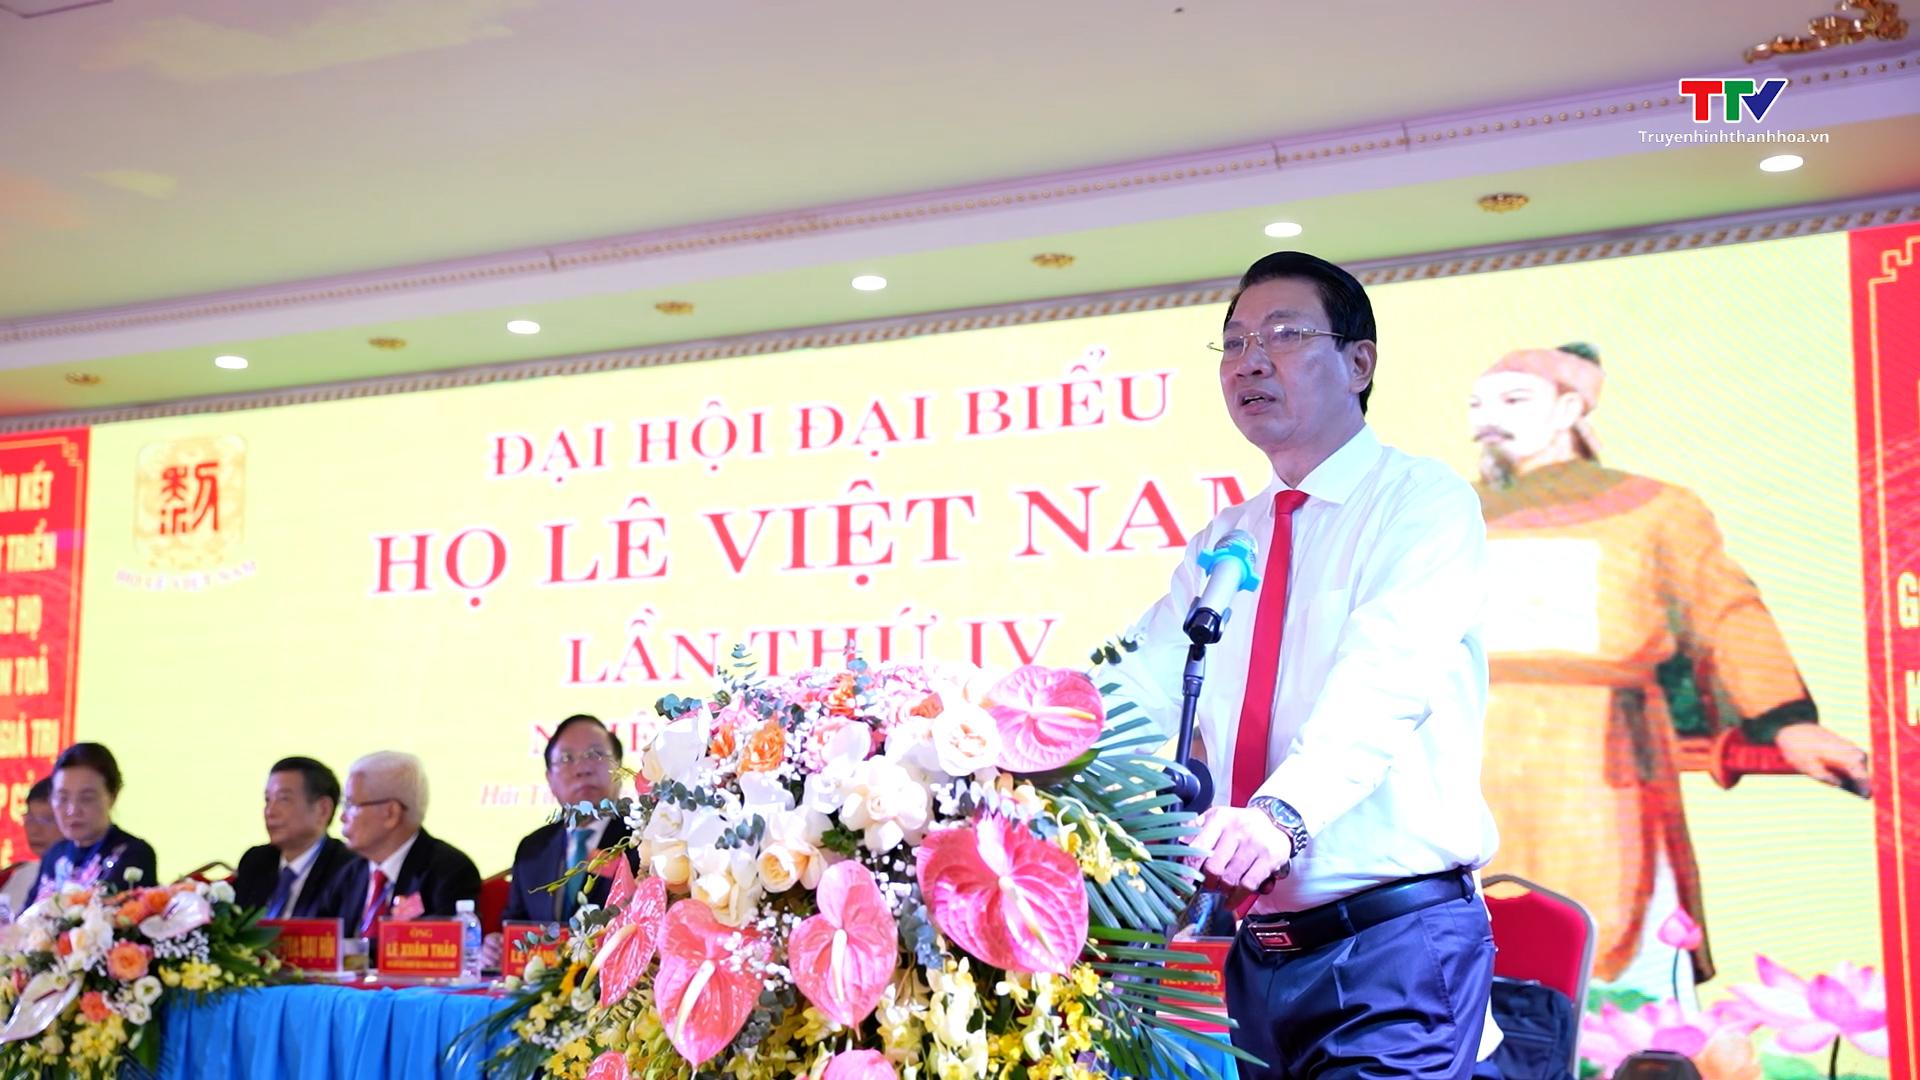 Đại hội đại biểu Họ Lê Việt Nam lần thứ IV, nhiệm kỳ 2023-2028 - Ảnh 2.